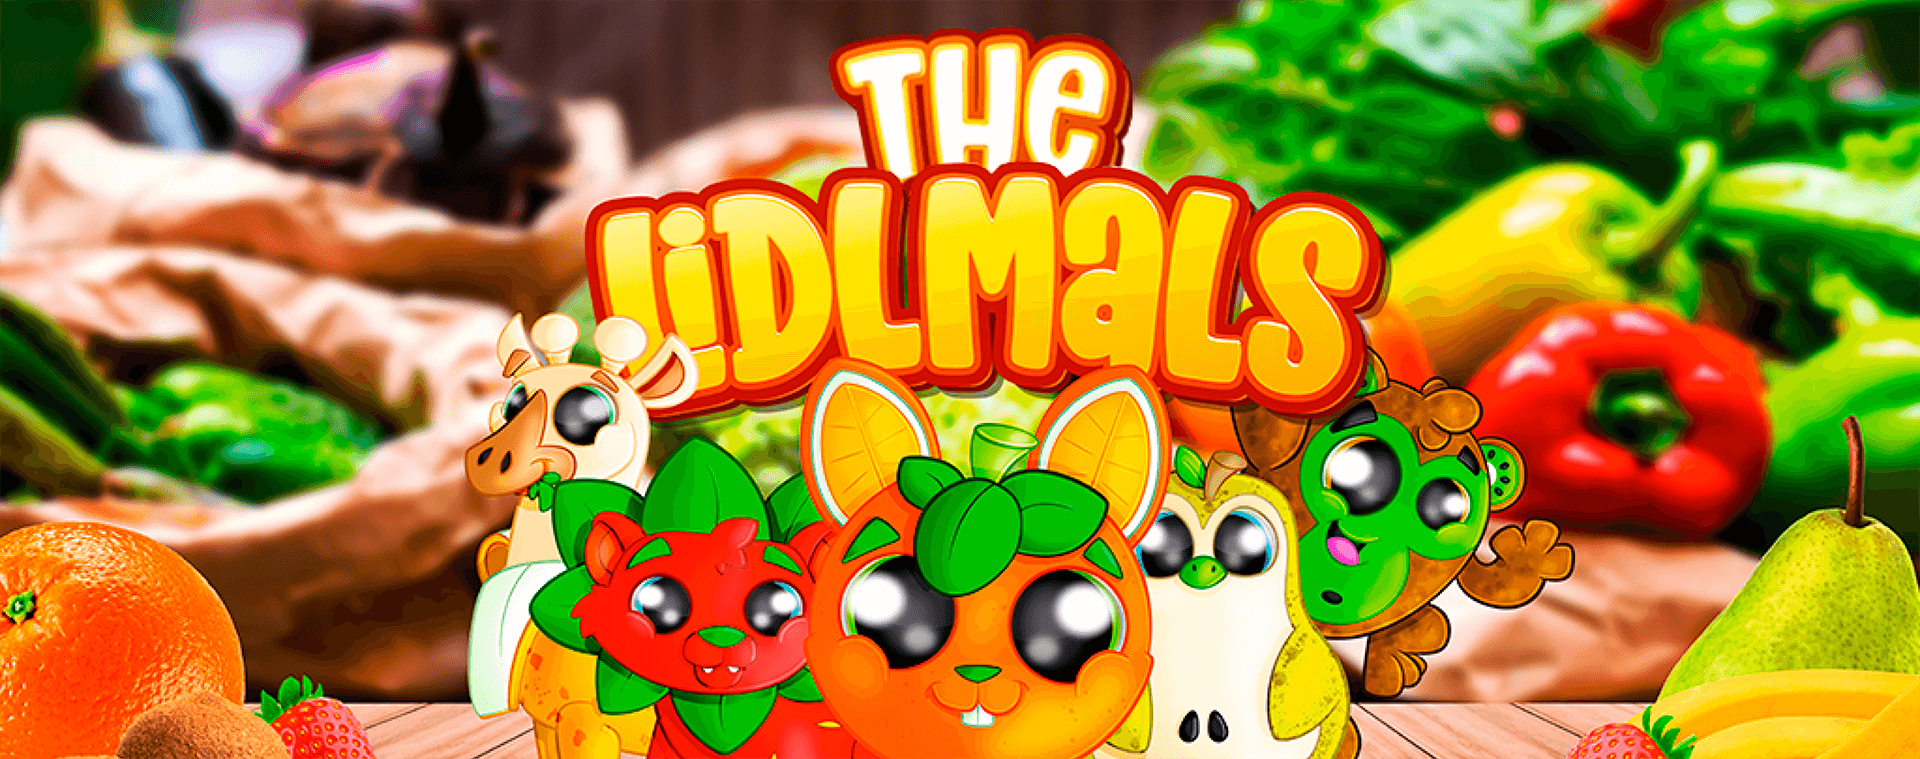 The Lidlmals